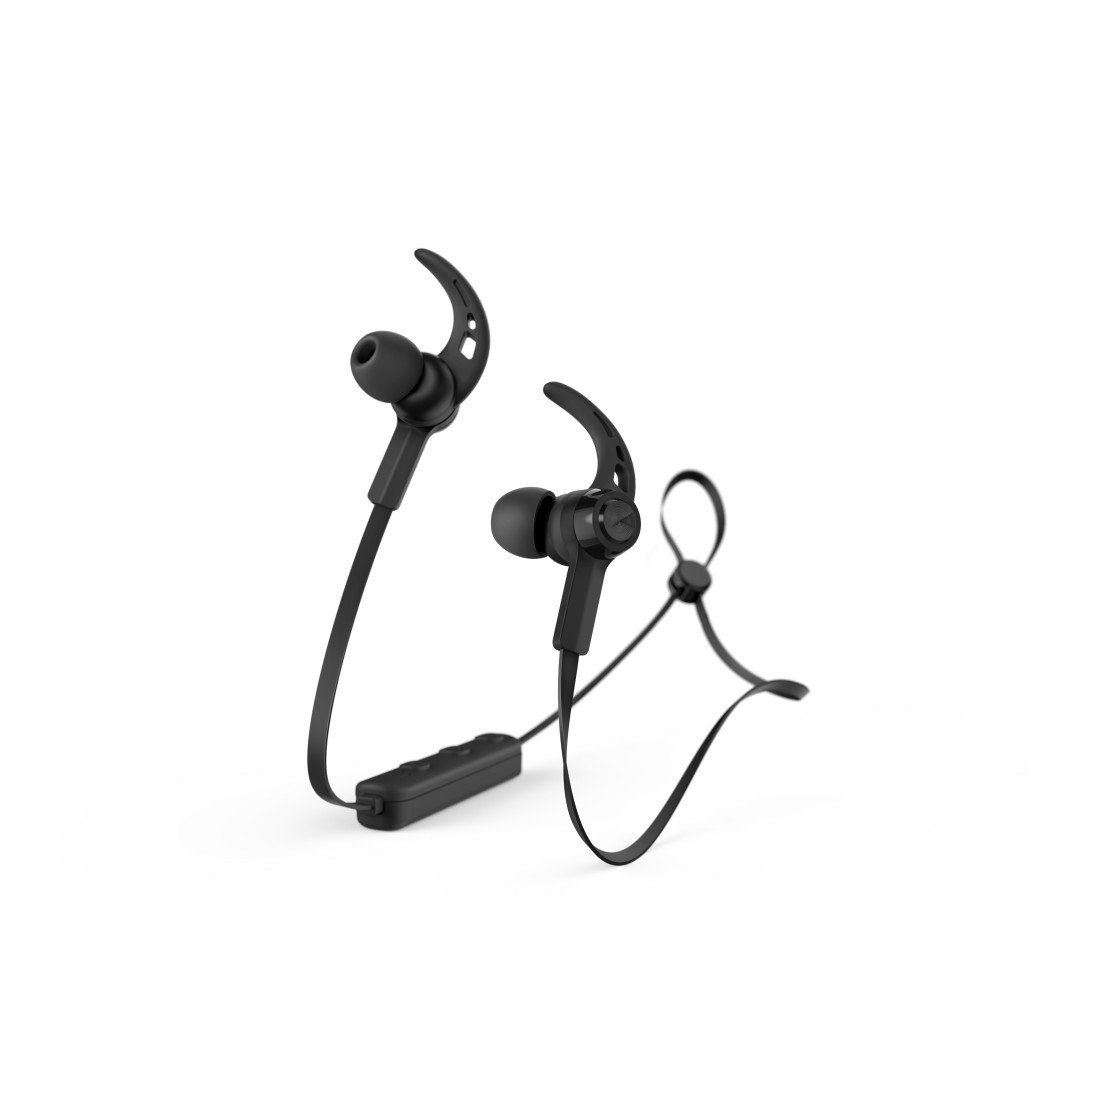 Hama Sport Bluetooth®-Kopfhörer 5.0 In Reichweite Sprachassistenten, Bluetooth, Schwarz, Sprachsteuerung, Google Rufannahmetaste) Ear, (Freisprechfunktion, Mikrofon, 10m Bluetooth, Bluetooth-Kopfhörer und Siri, Lautstärkeregler Assistant, A2DP AVRCP HFP